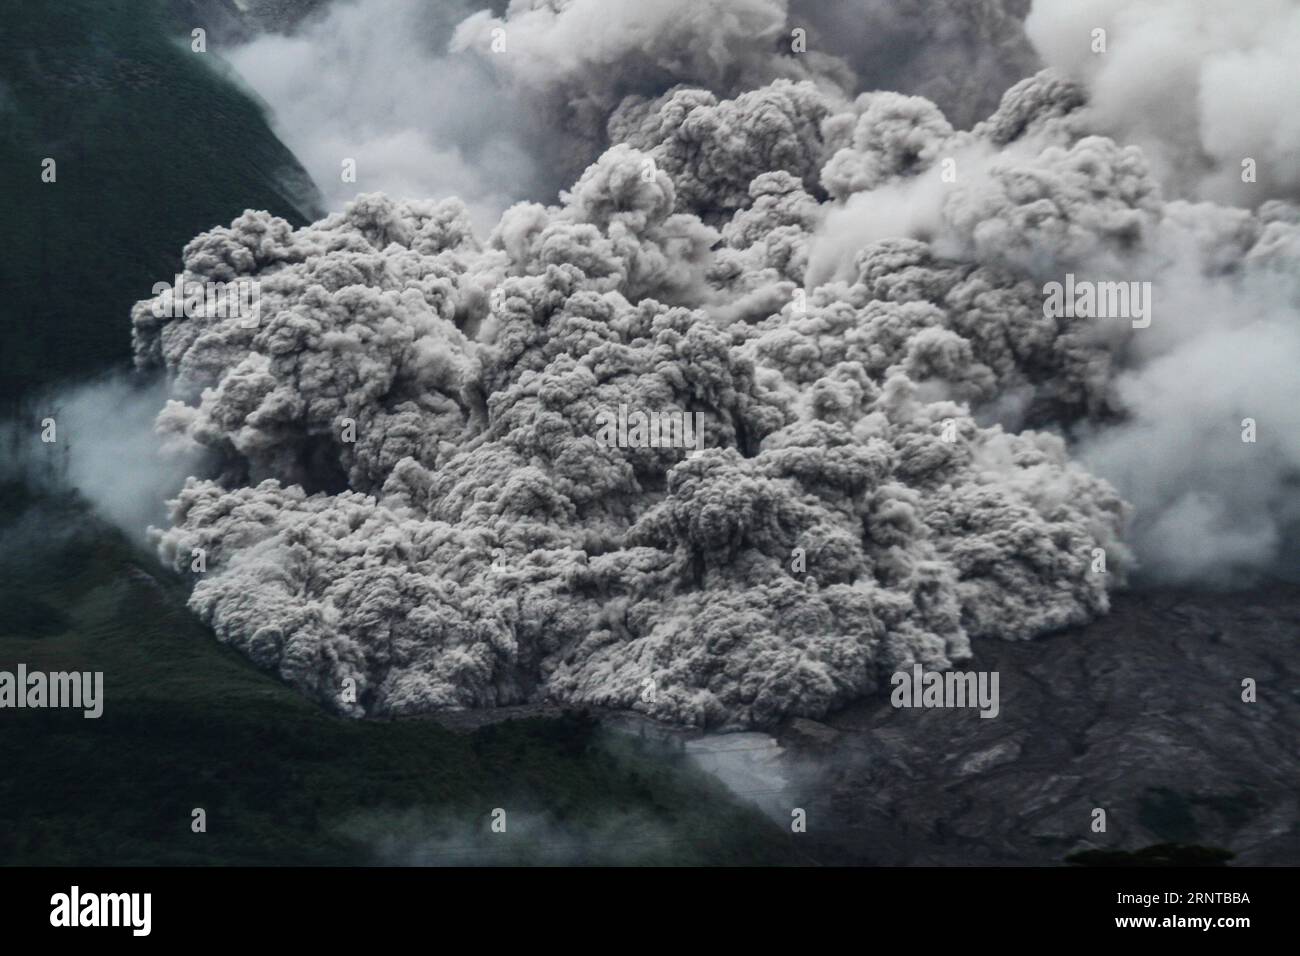 (171105) -- PECHINO, 5 novembre 2017 -- il Monte Sinabung lancia cenere e lava calda nel distretto di Karo, provincia indonesiana di Sumatra settentrionale, 3 novembre 2017. ) XINHUA PHOTO WEEKLY CHOICES AlbertxDamanik PUBLICATIONxNOTxINxCHN Foto Stock